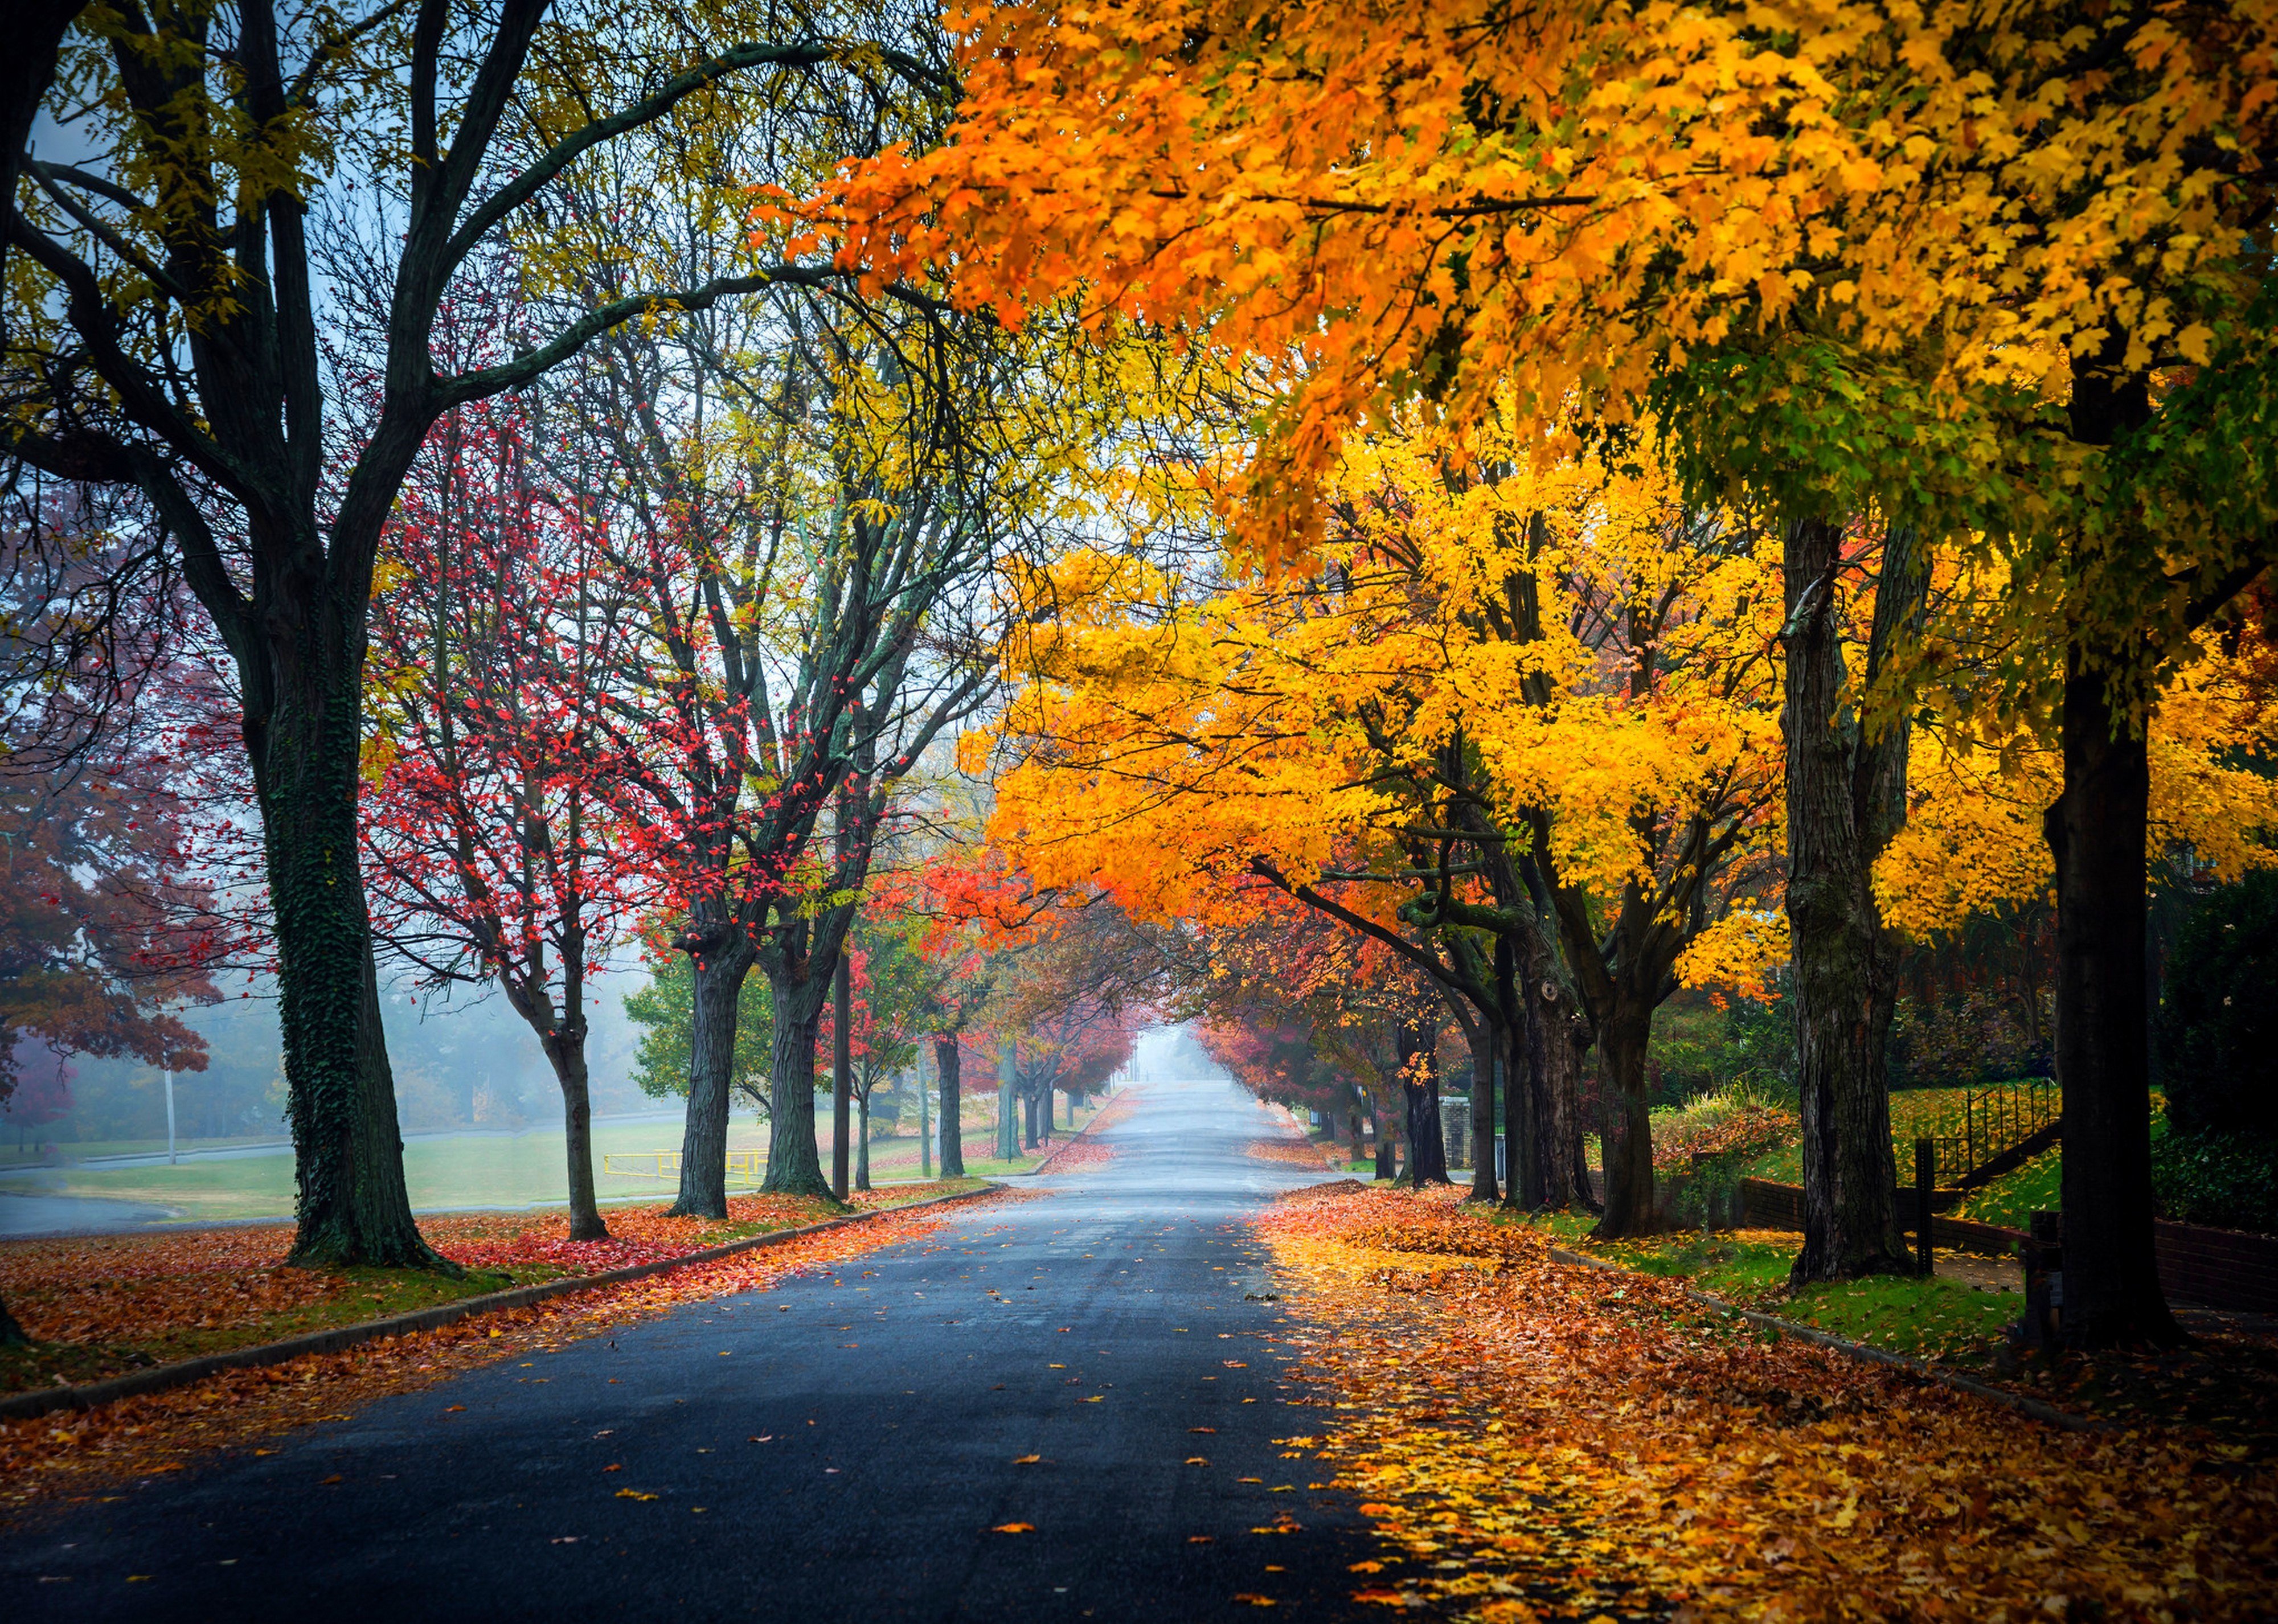 trees, Path, Road, Nature, Fall, Leaves, Autumn, Splendor, Autumn